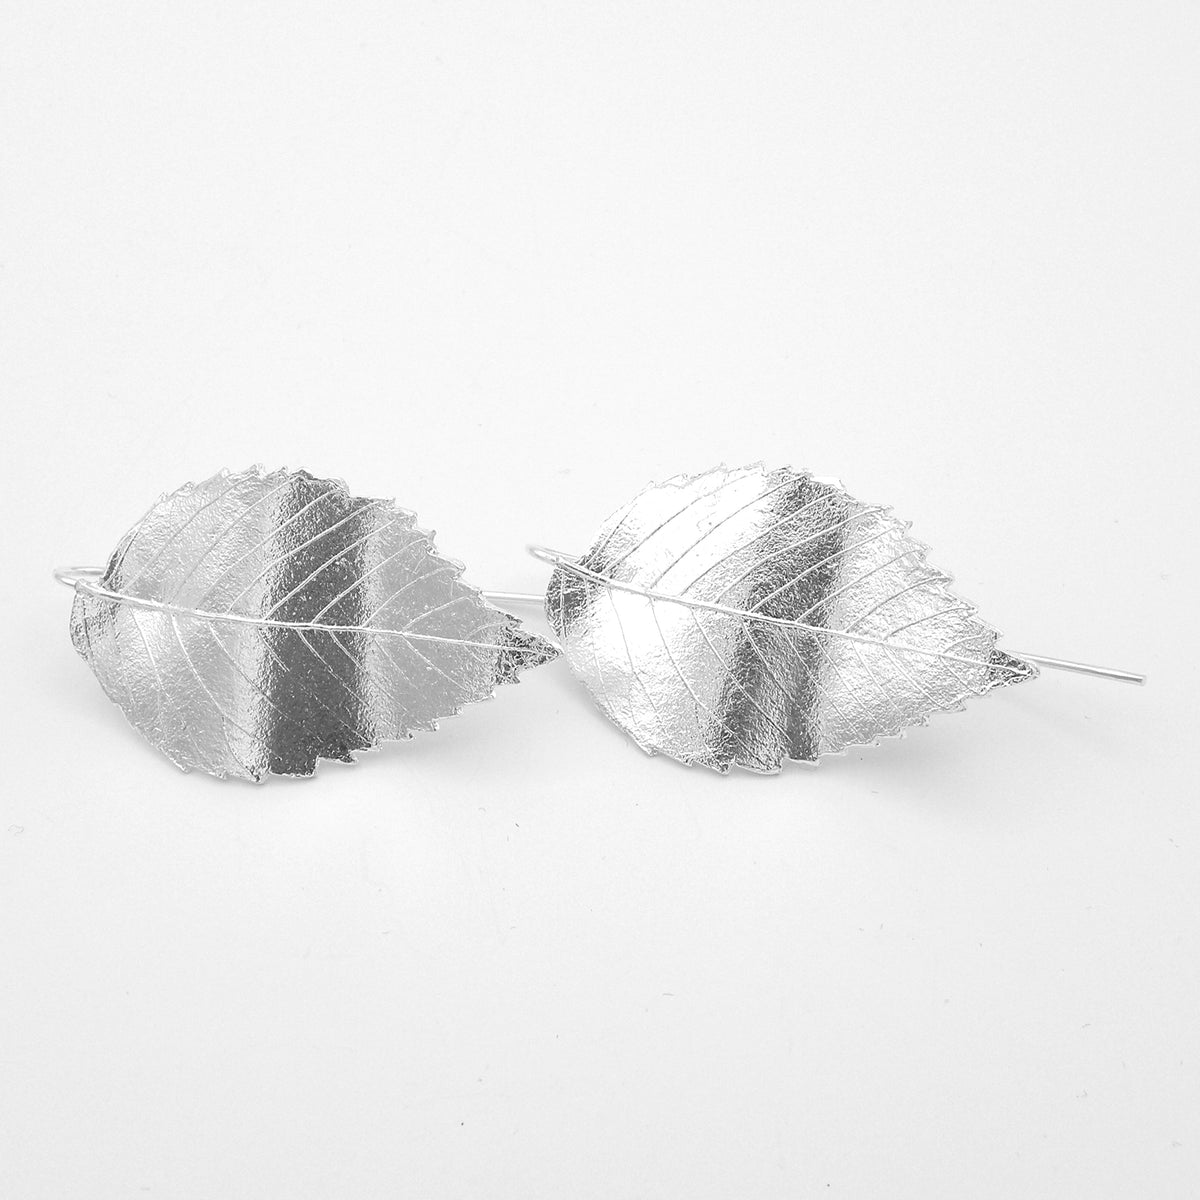 Elm leaf earrings